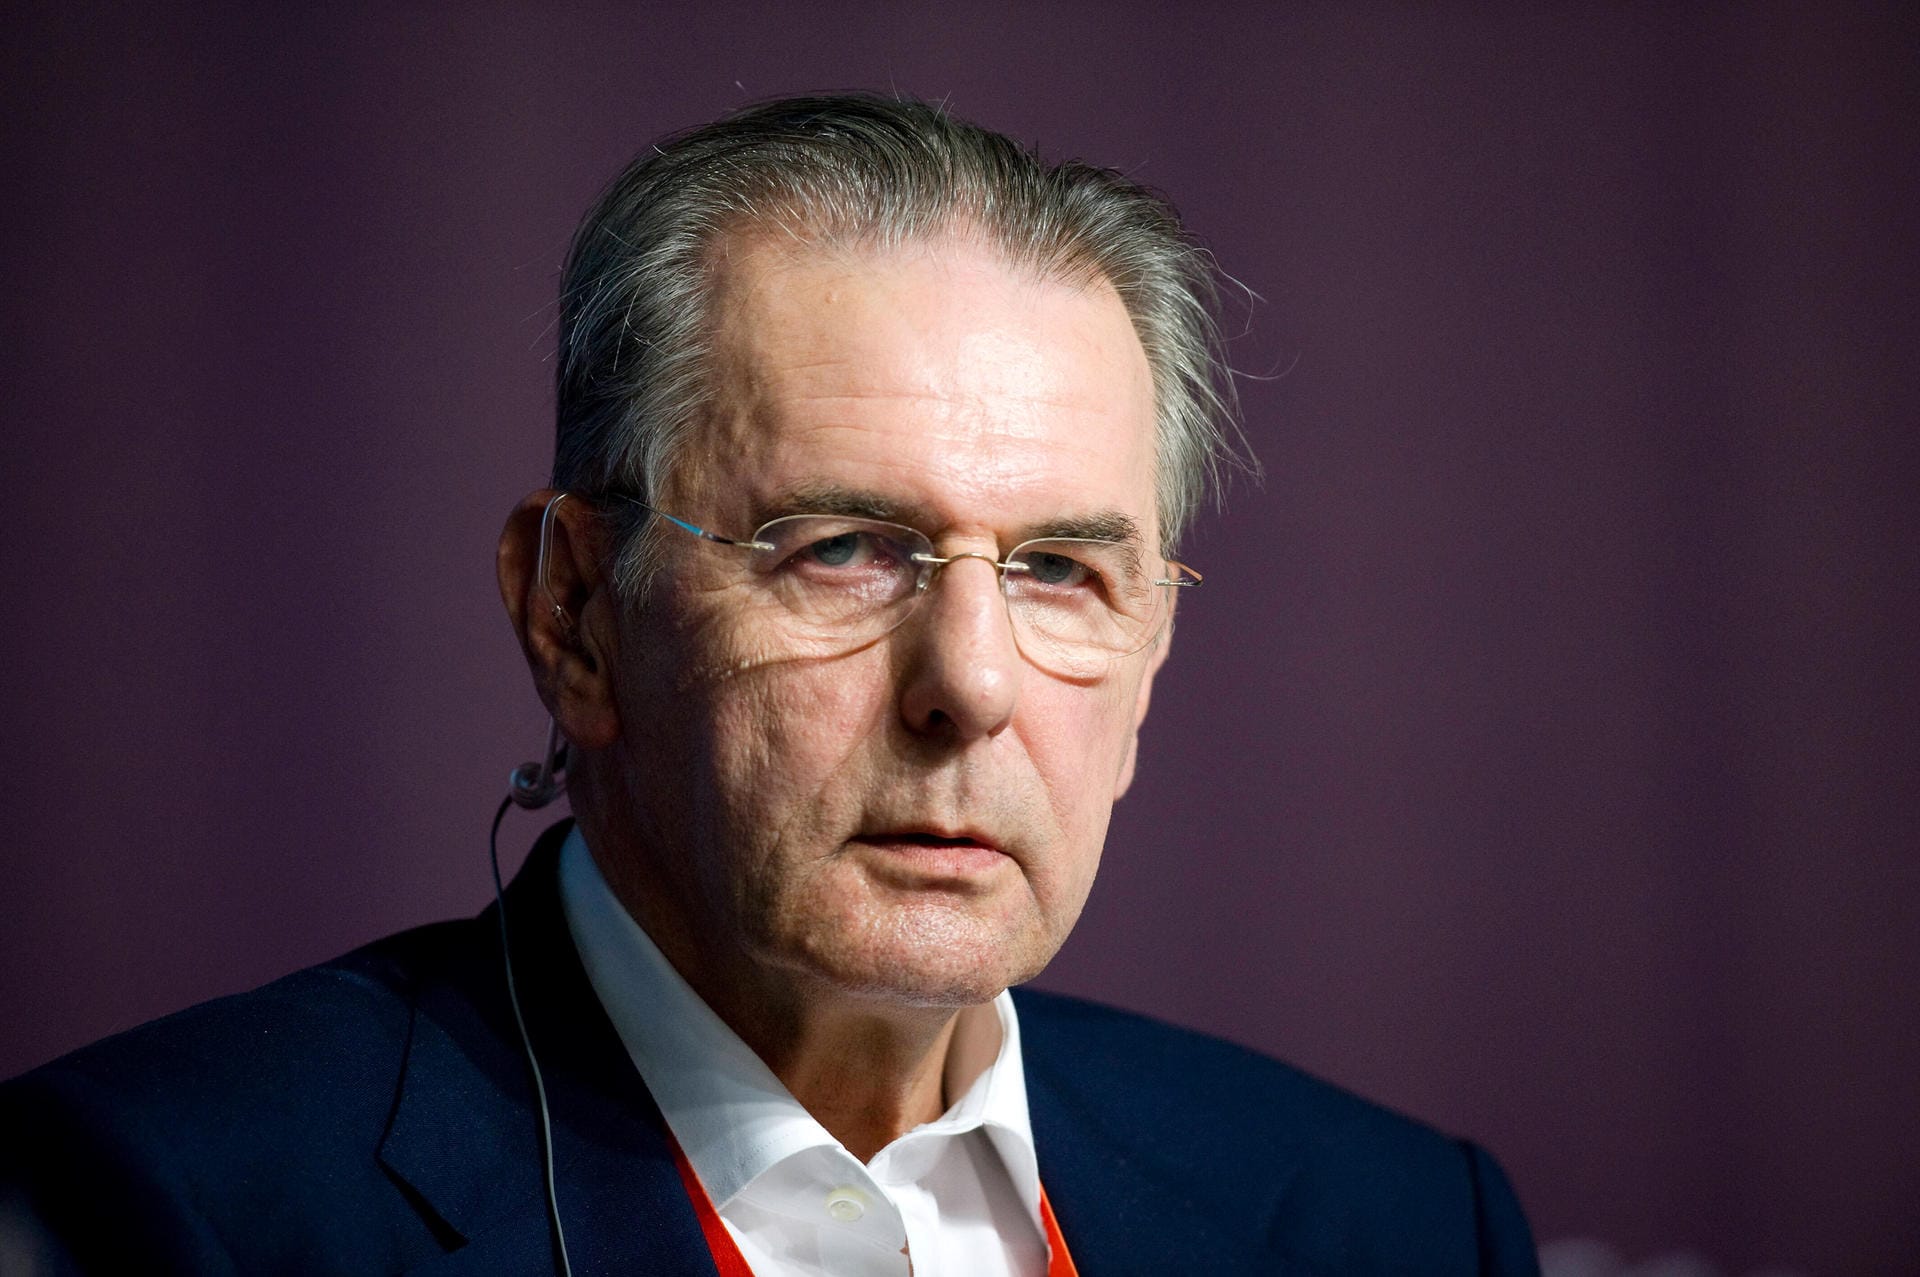 29. August: Der frühere IOC-Präsident Jacques Rogge stirbt im Alter von 79 Jahren. Der Belgier führte als achter Präsident von 2001 bis 2013 die Geschicke beim IOC, ehe er vom aktuellen Präsidenten Thomas Bach abgelöst wurde.